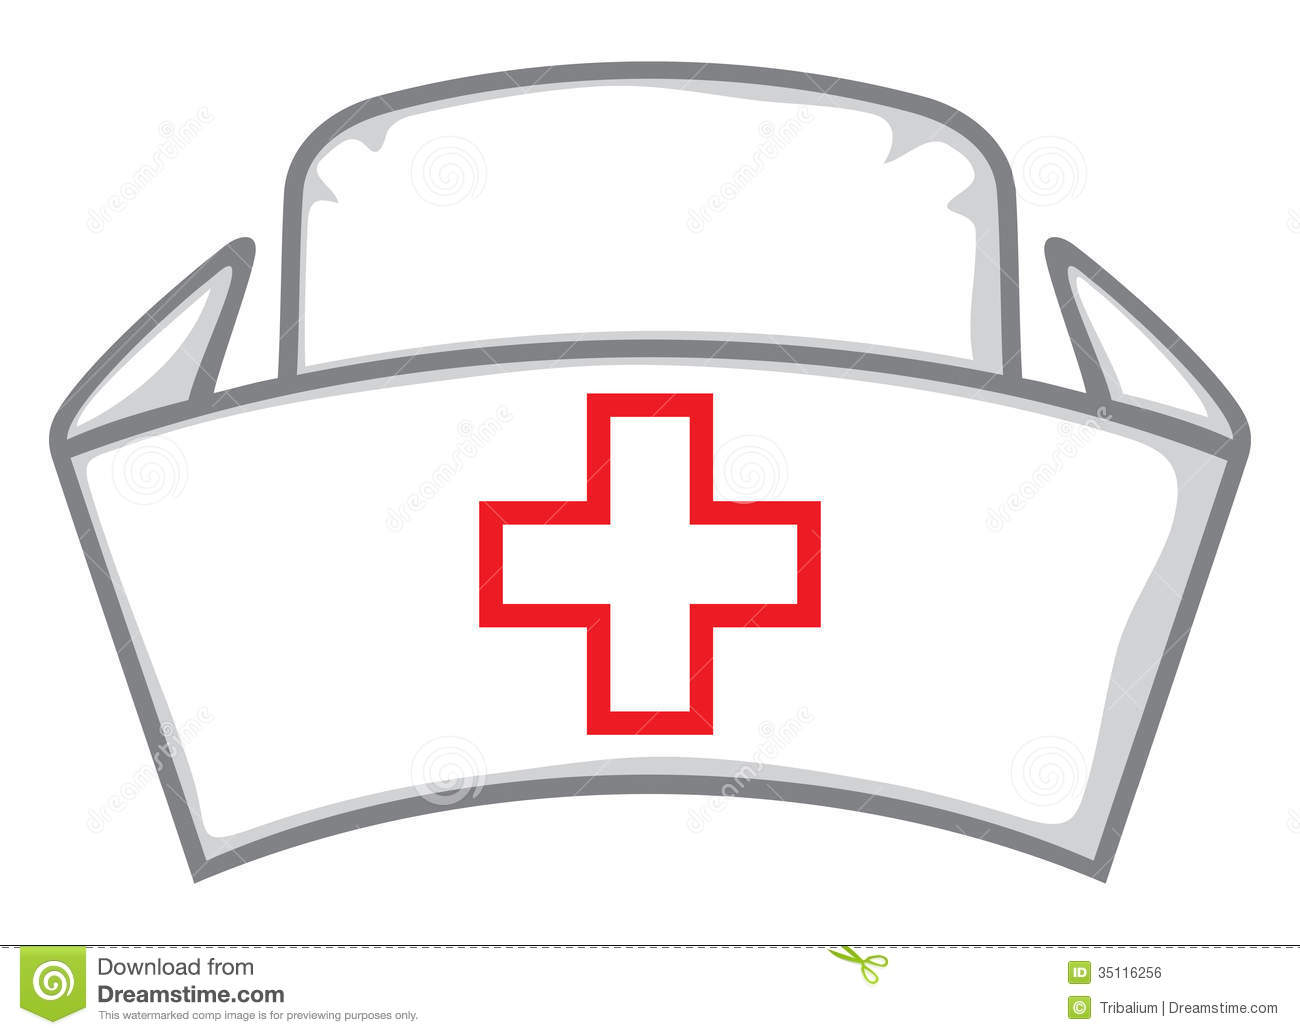 hats clipart medical